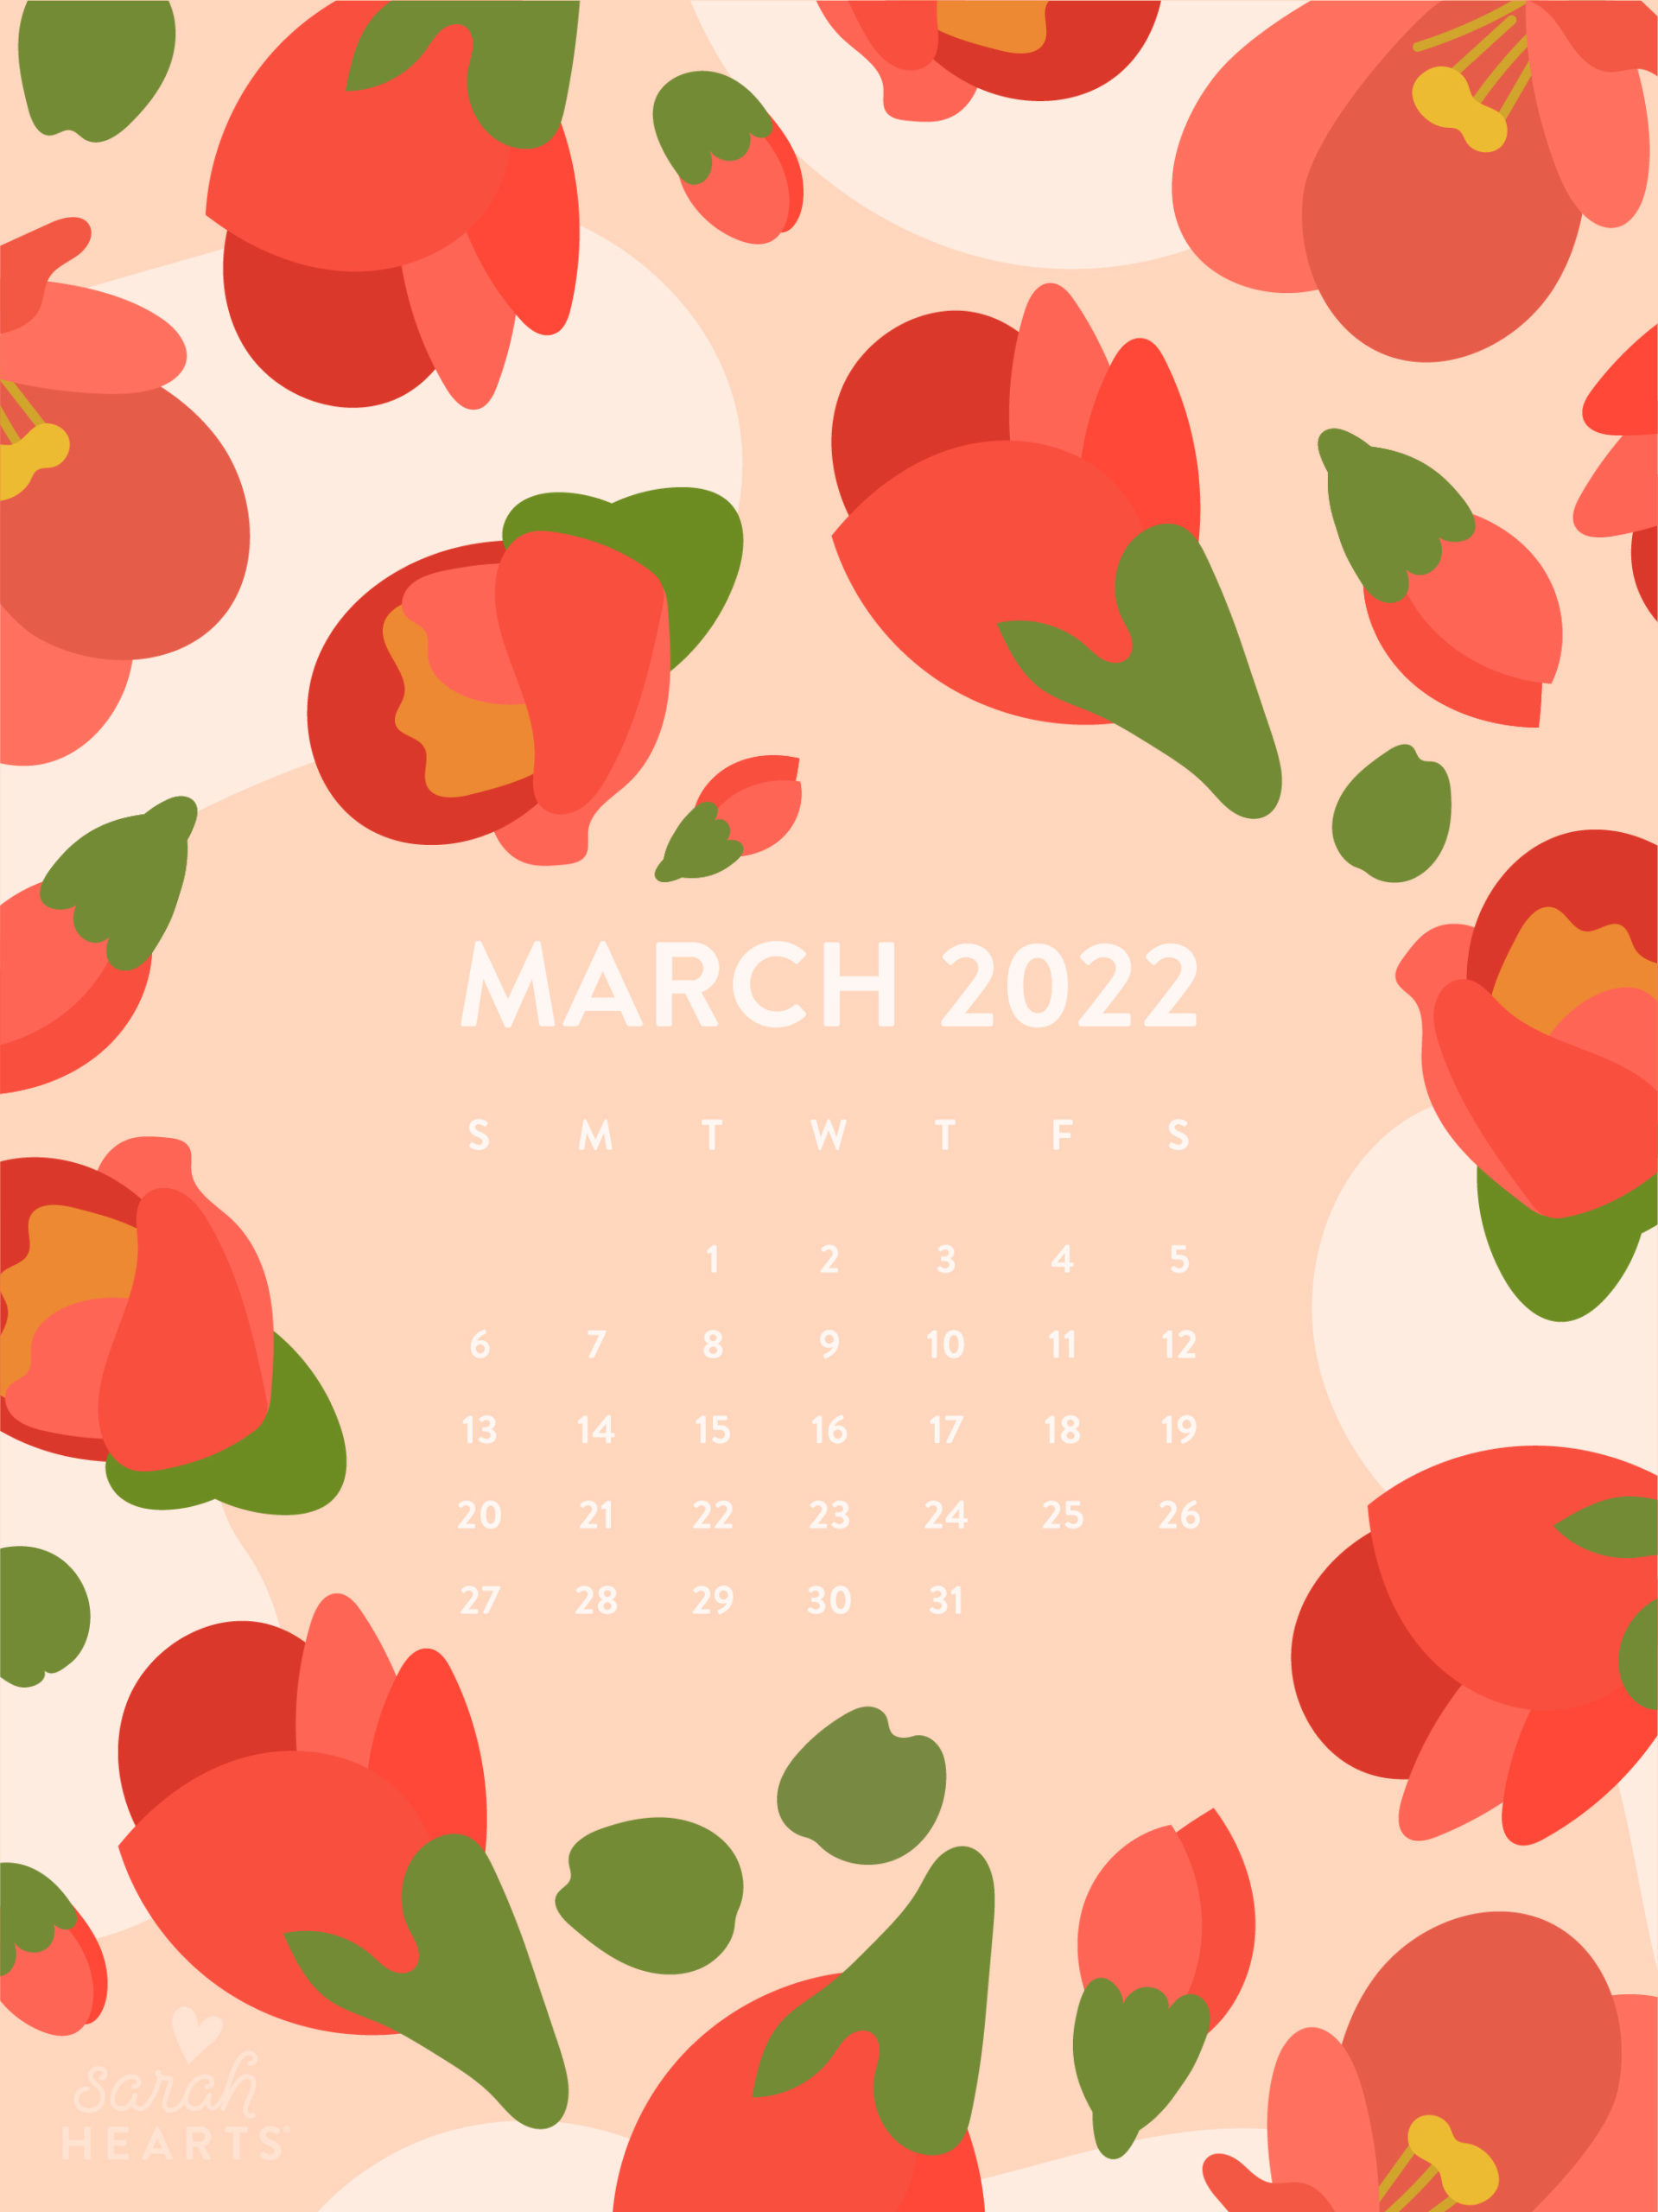 Bạn muốn tạo một không gian làm việc tràn ngập năng lượng? Hình nền lịch tháng 3 năm 2022 sẽ là sự lựa chọn hoàn hảo cho bạn. Với những bông hoa tươi sáng và màu sắc tươi trẻ, bạn sẽ có cảm giác thư thái và sẵn sàng cho một tháng mới tràn đầy năng lượng.